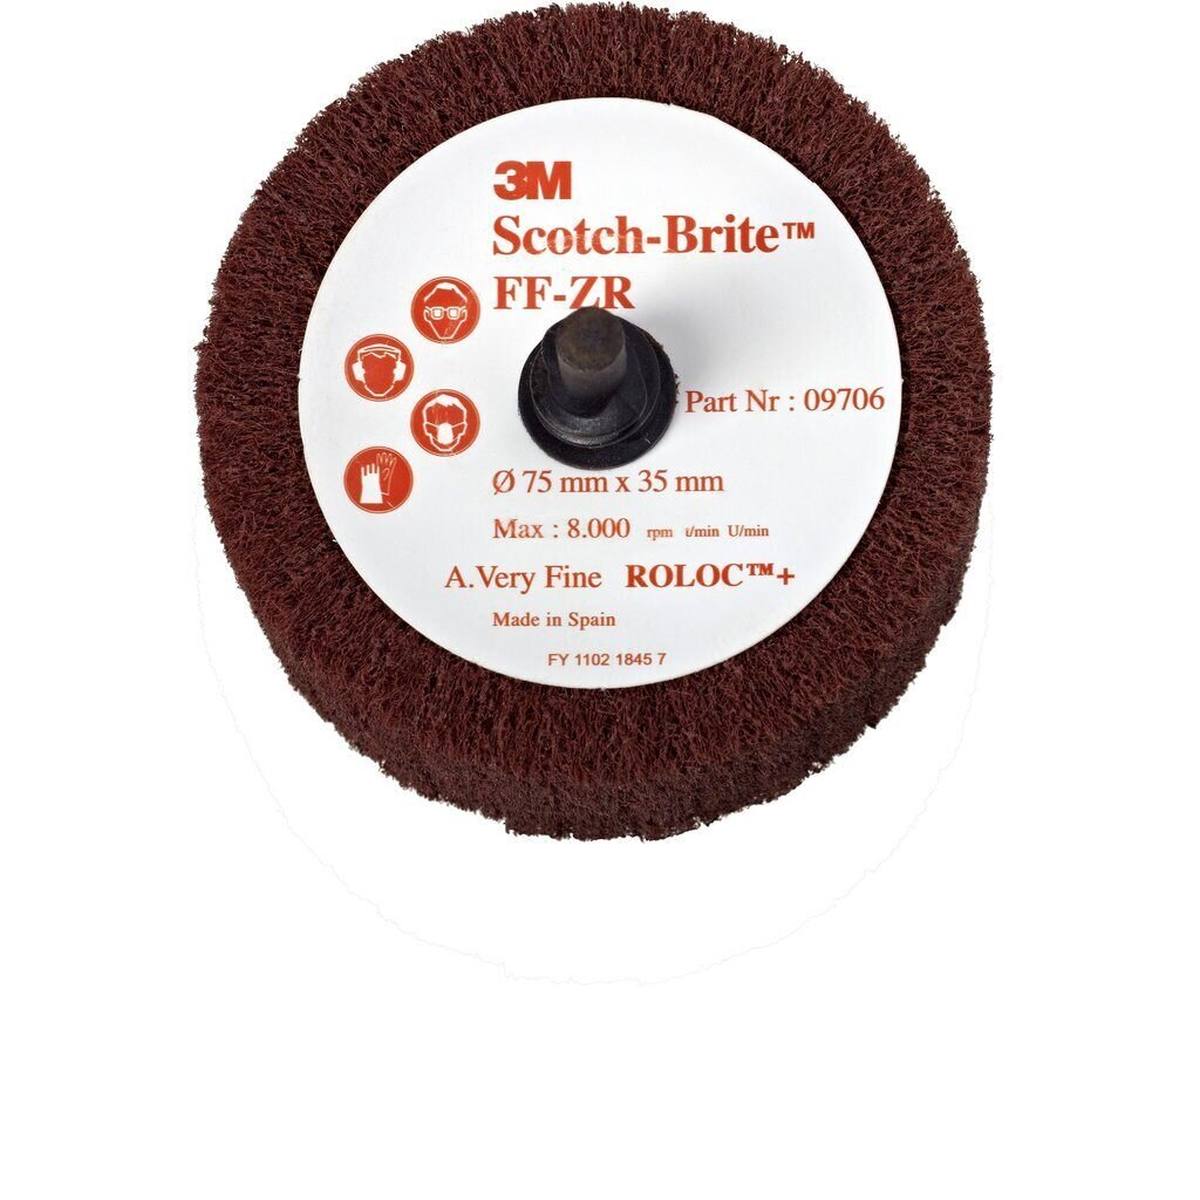 3M Scotch-Brite Roloc Flap brush FF-ZR, red-brown, 50.8 mm, 25 mm, A, very fine #09704